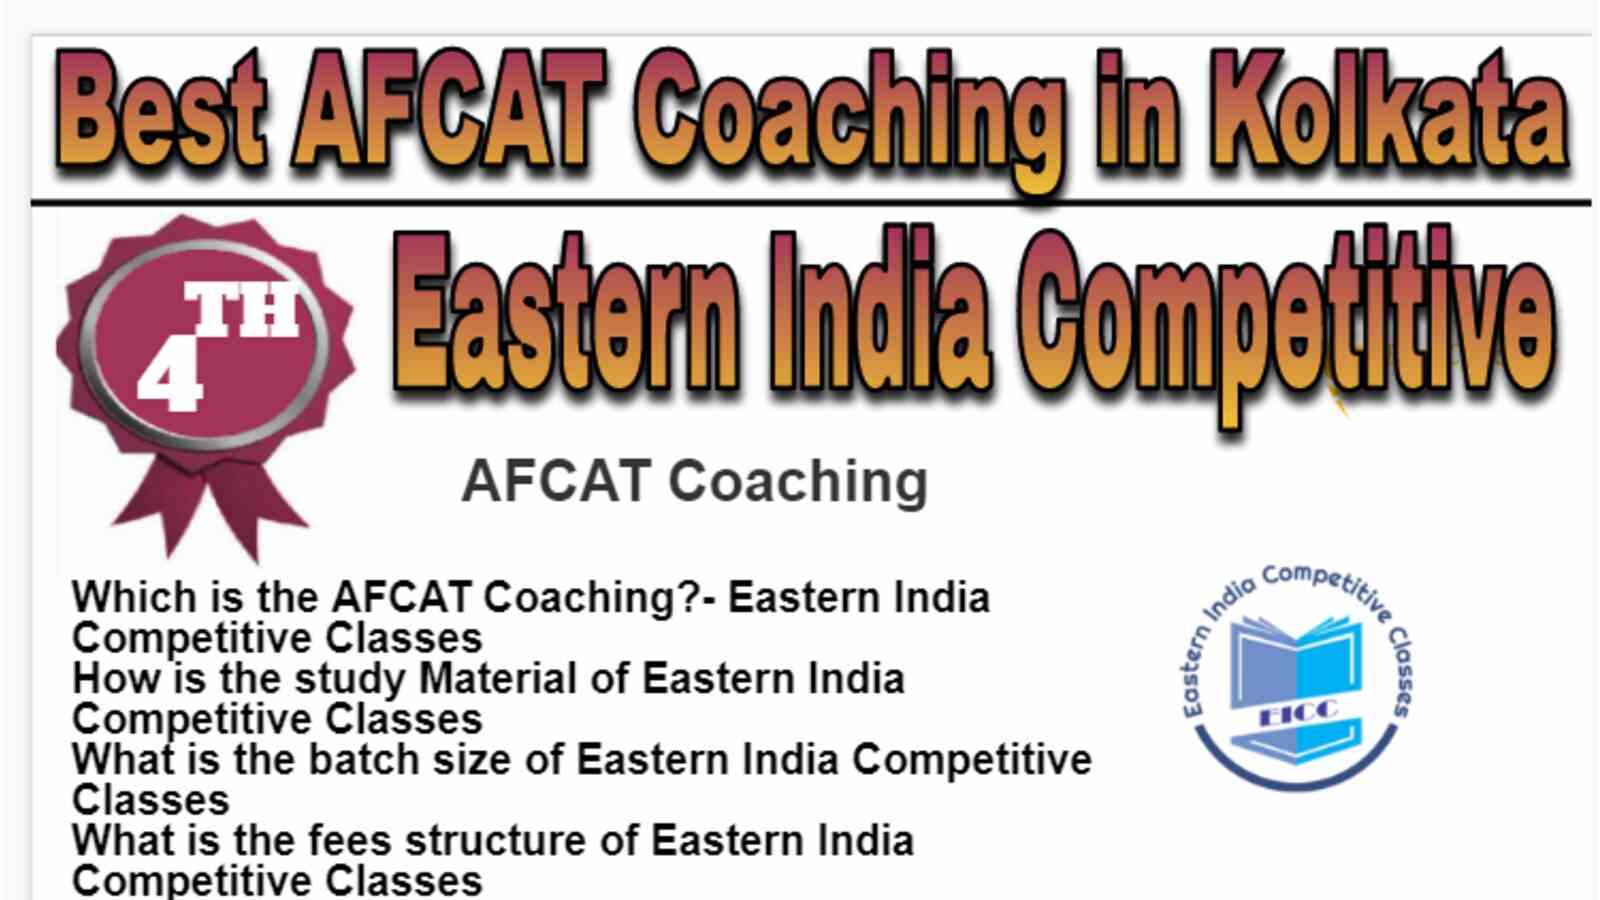 Rank 4 Best AFCAT Coaching in Kolkata